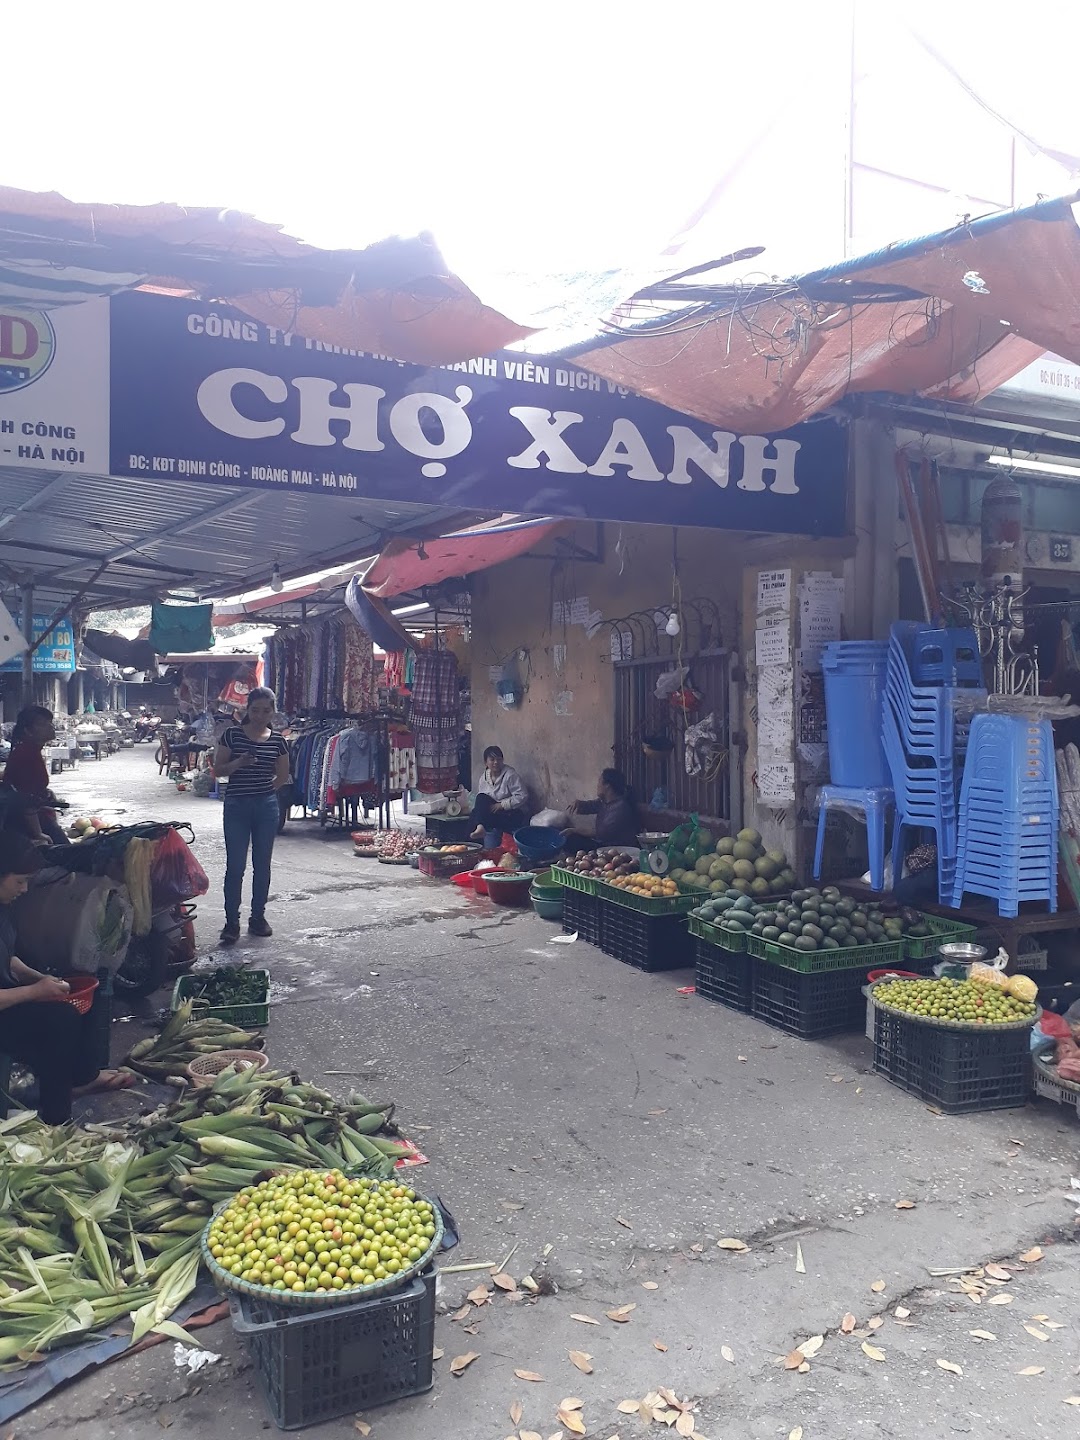 Chợ Xanh Định Công